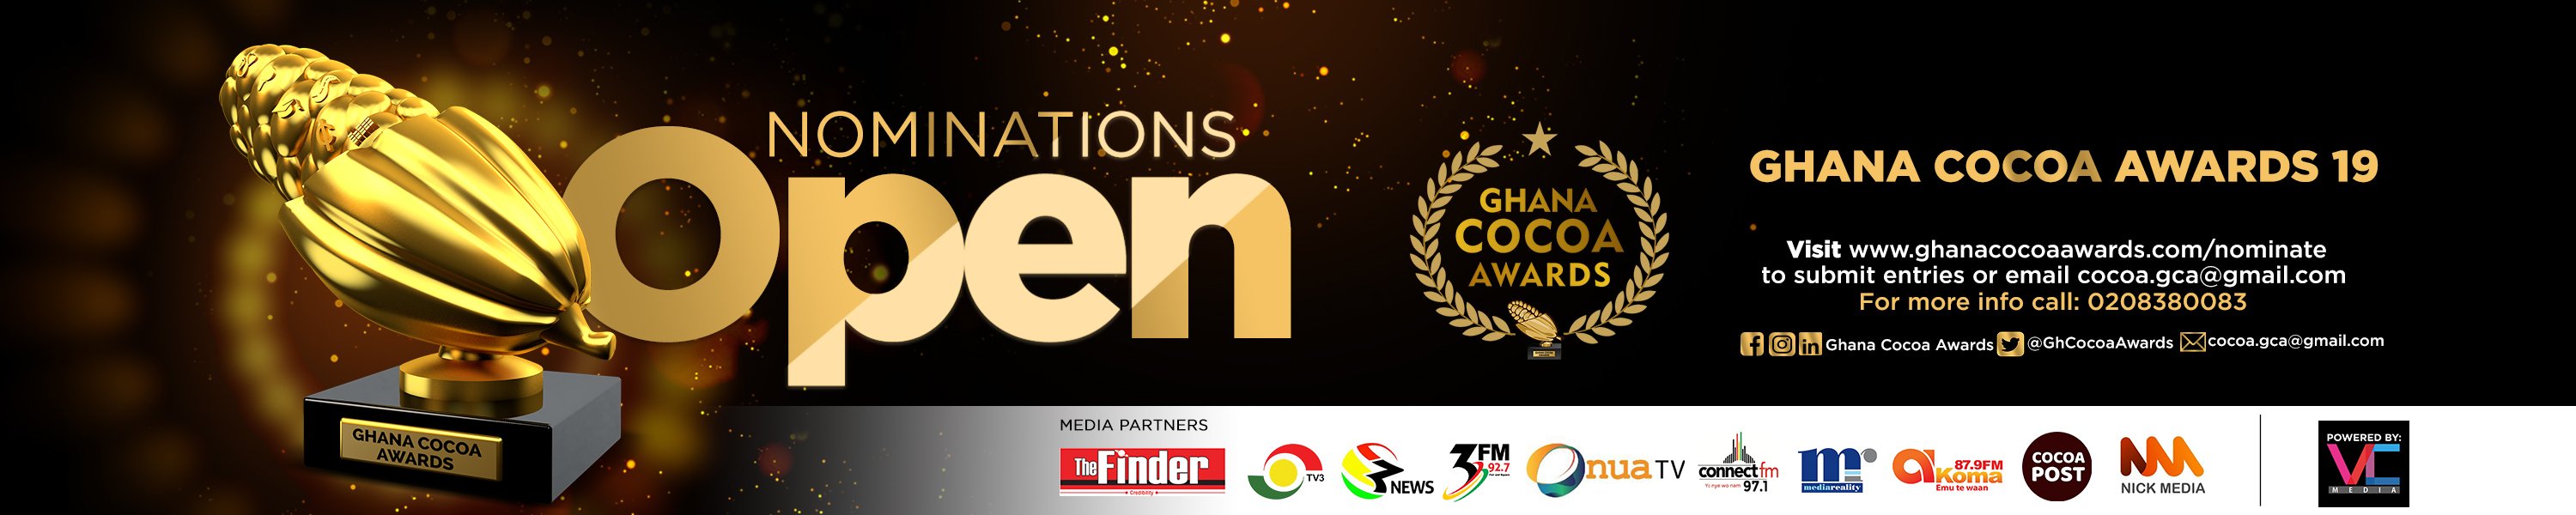 Ghana Cocoa Awards